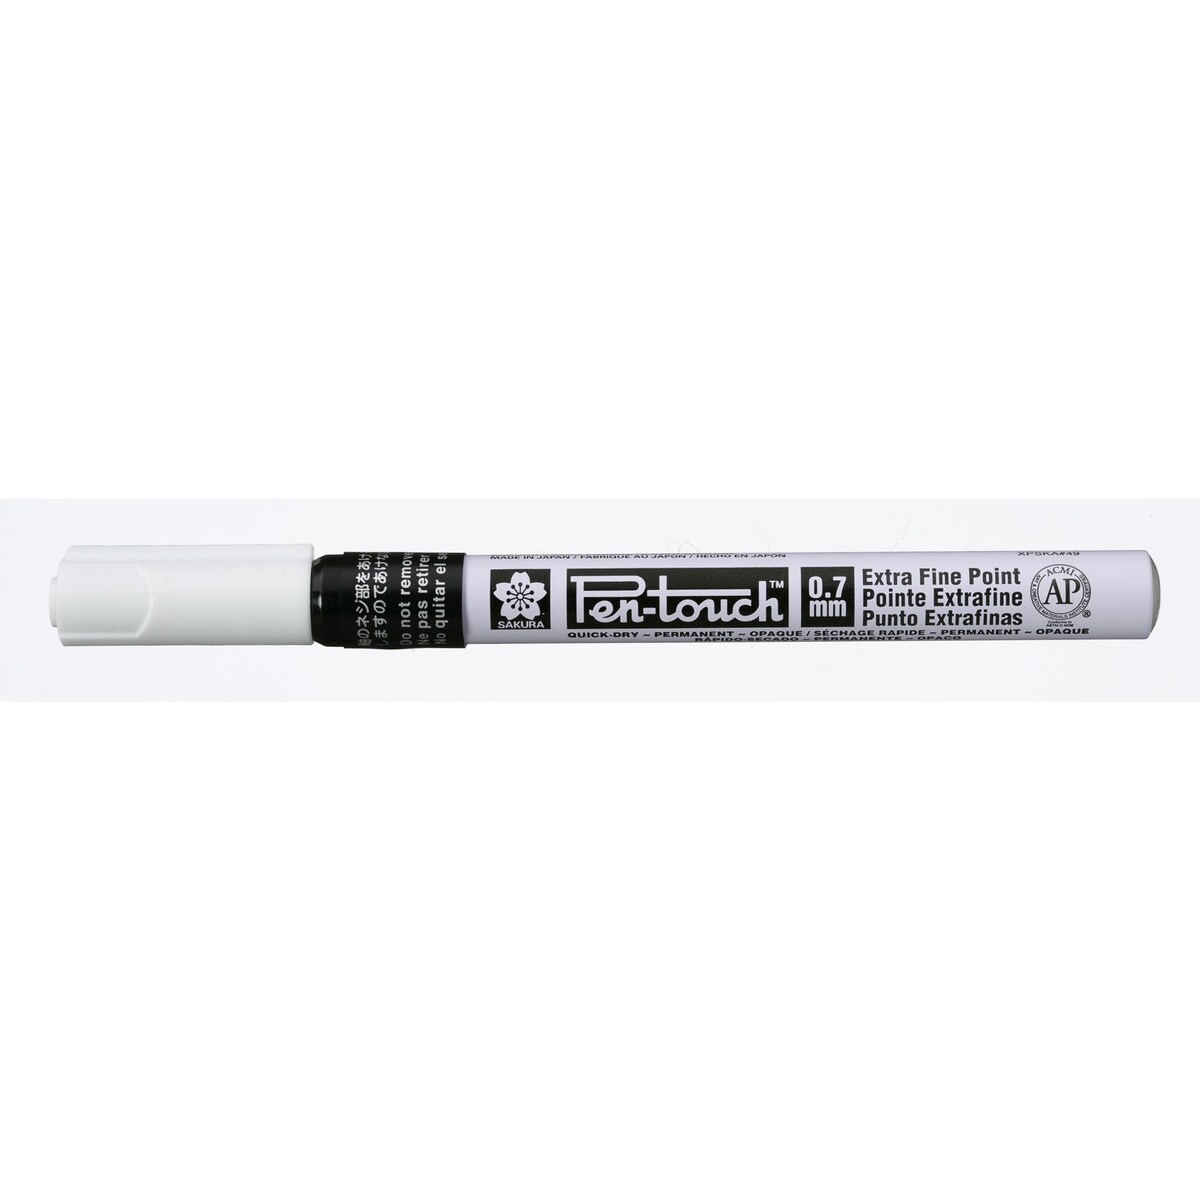 Pen-Touch schwarz extrafein